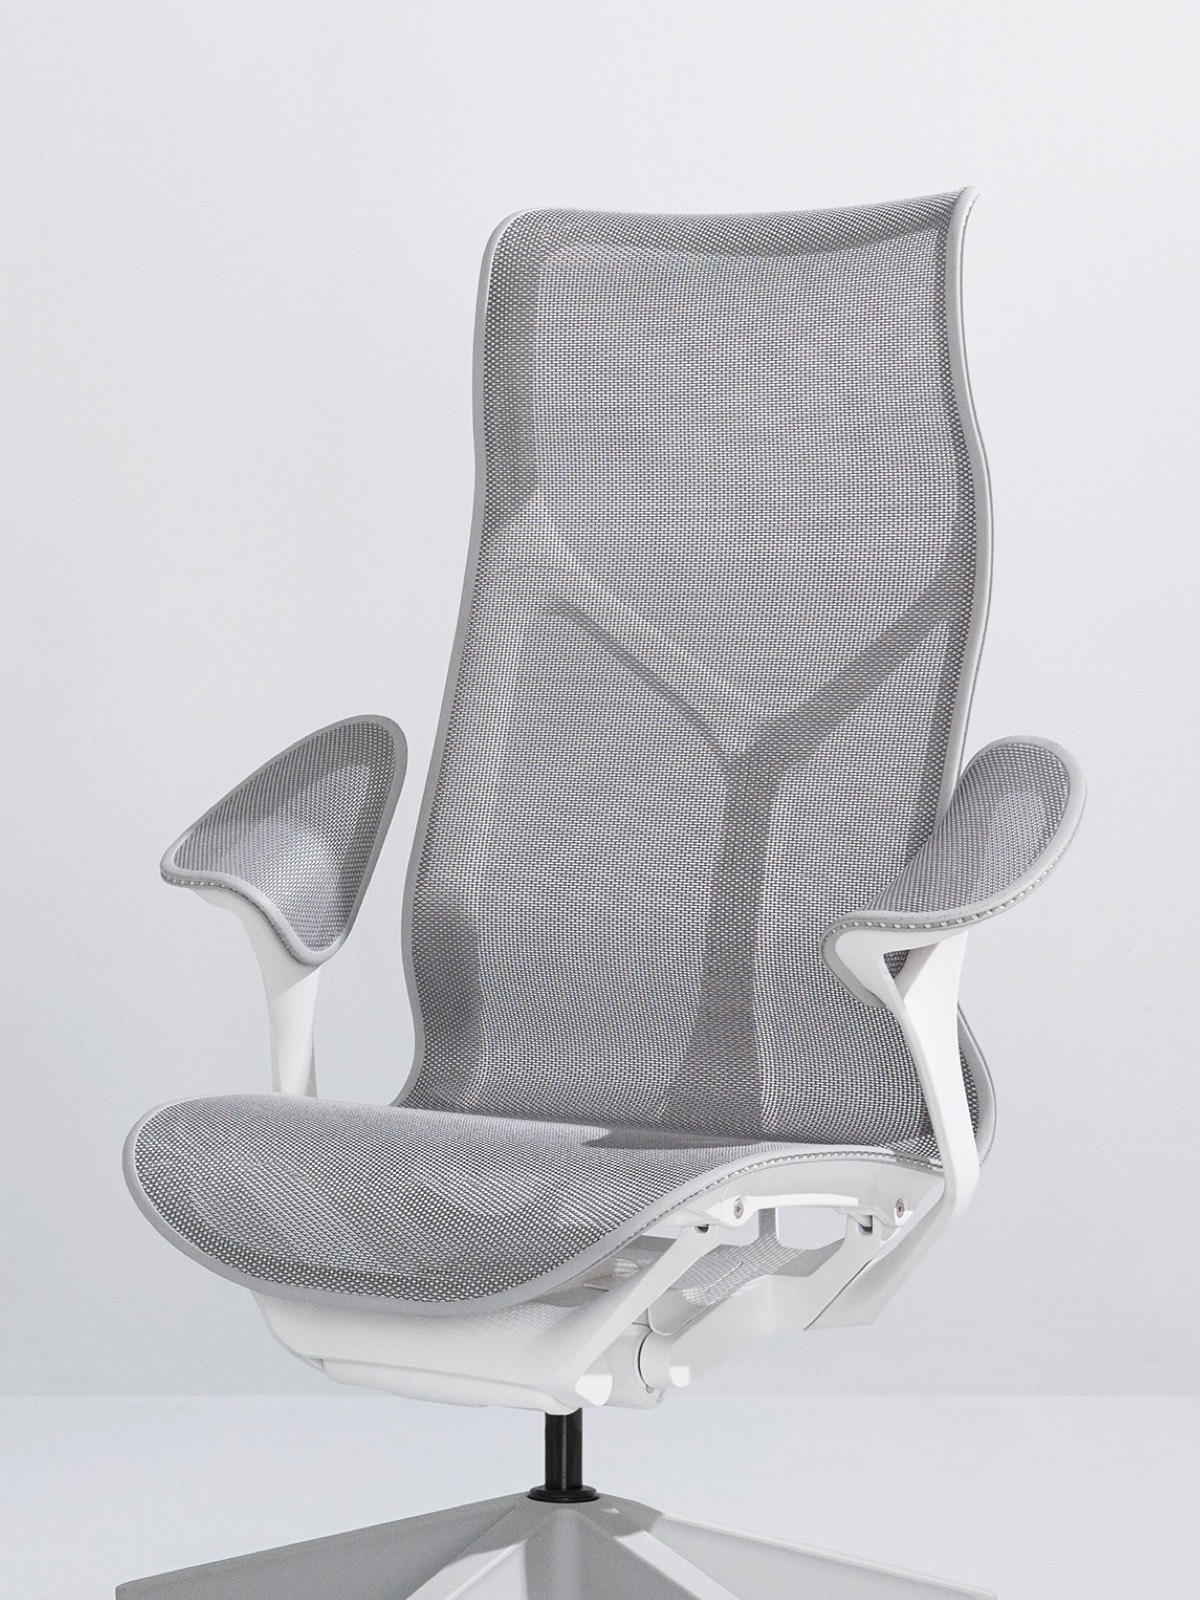 Een Mineral grijze Cosm hoge stoel met een wit frame en bladarmen op een lichtgrijze achtergrond.